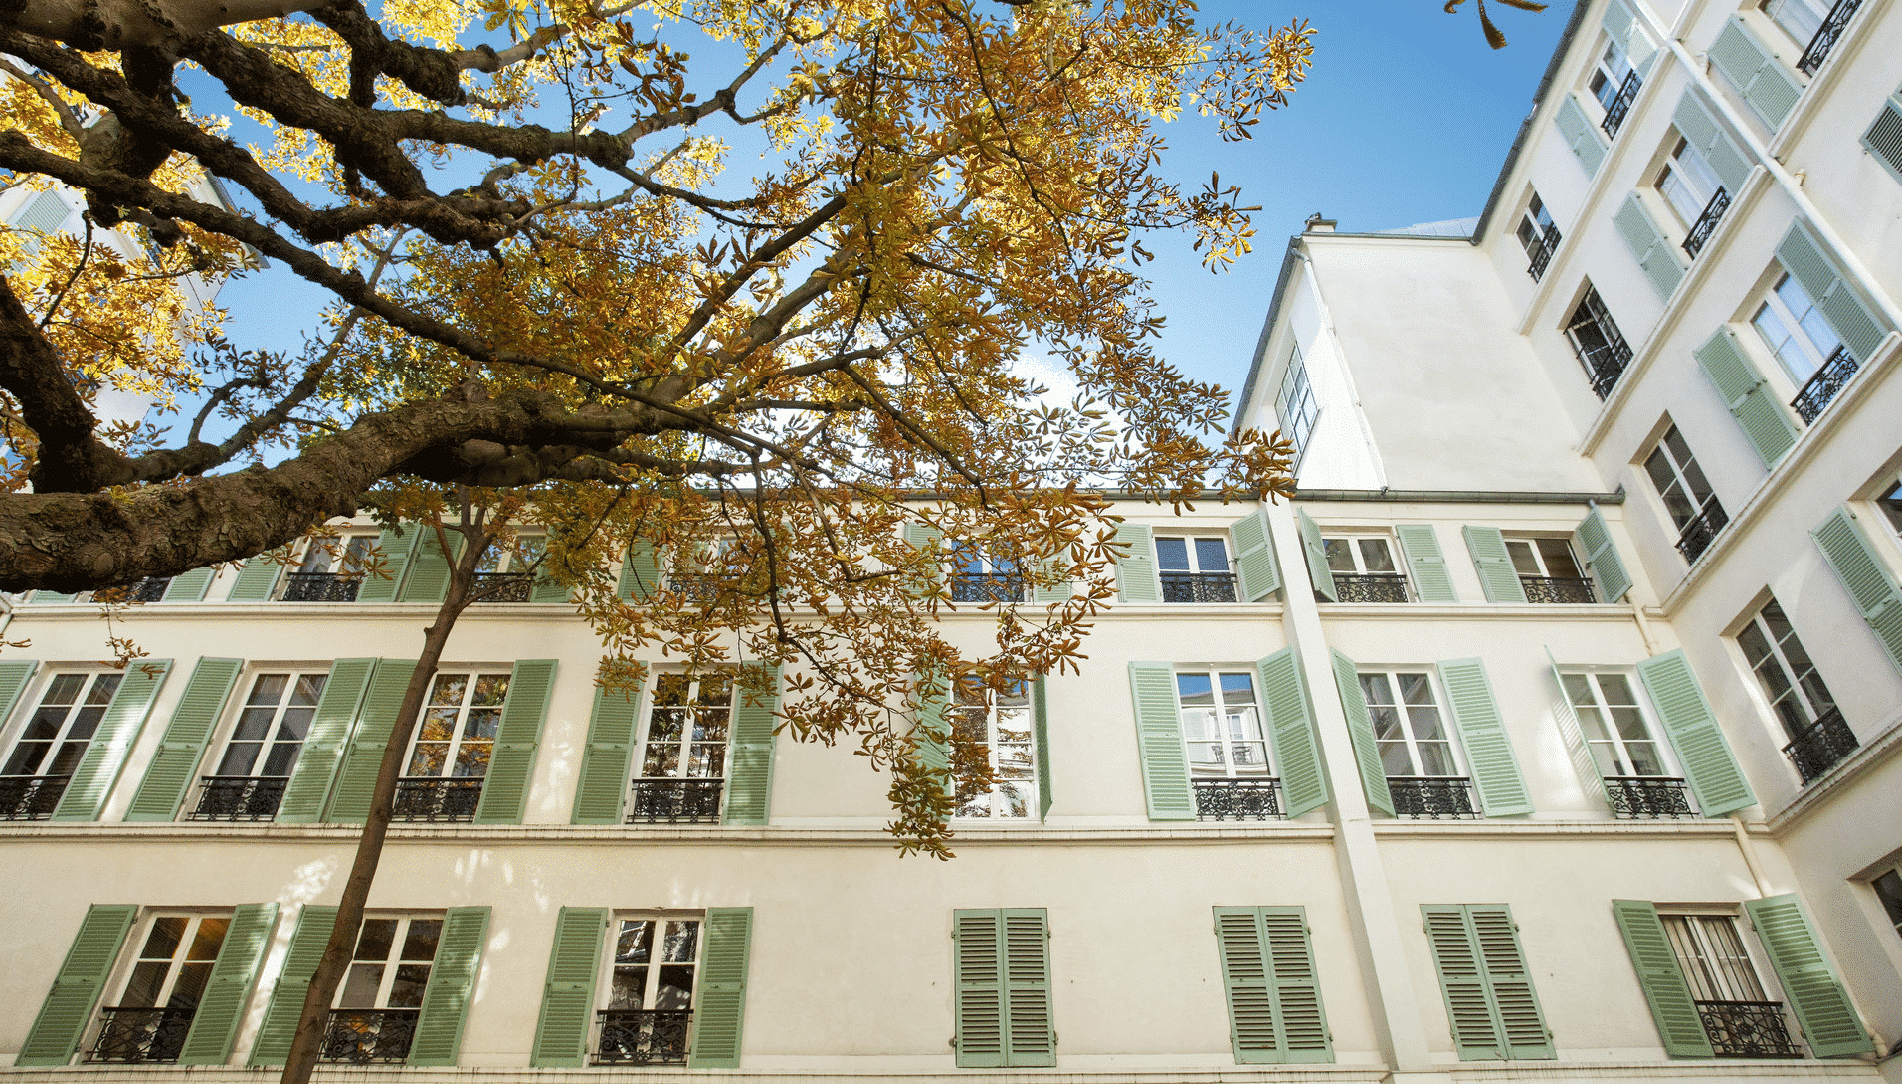 Faubourg Saint-Honoré Apartment for Sale